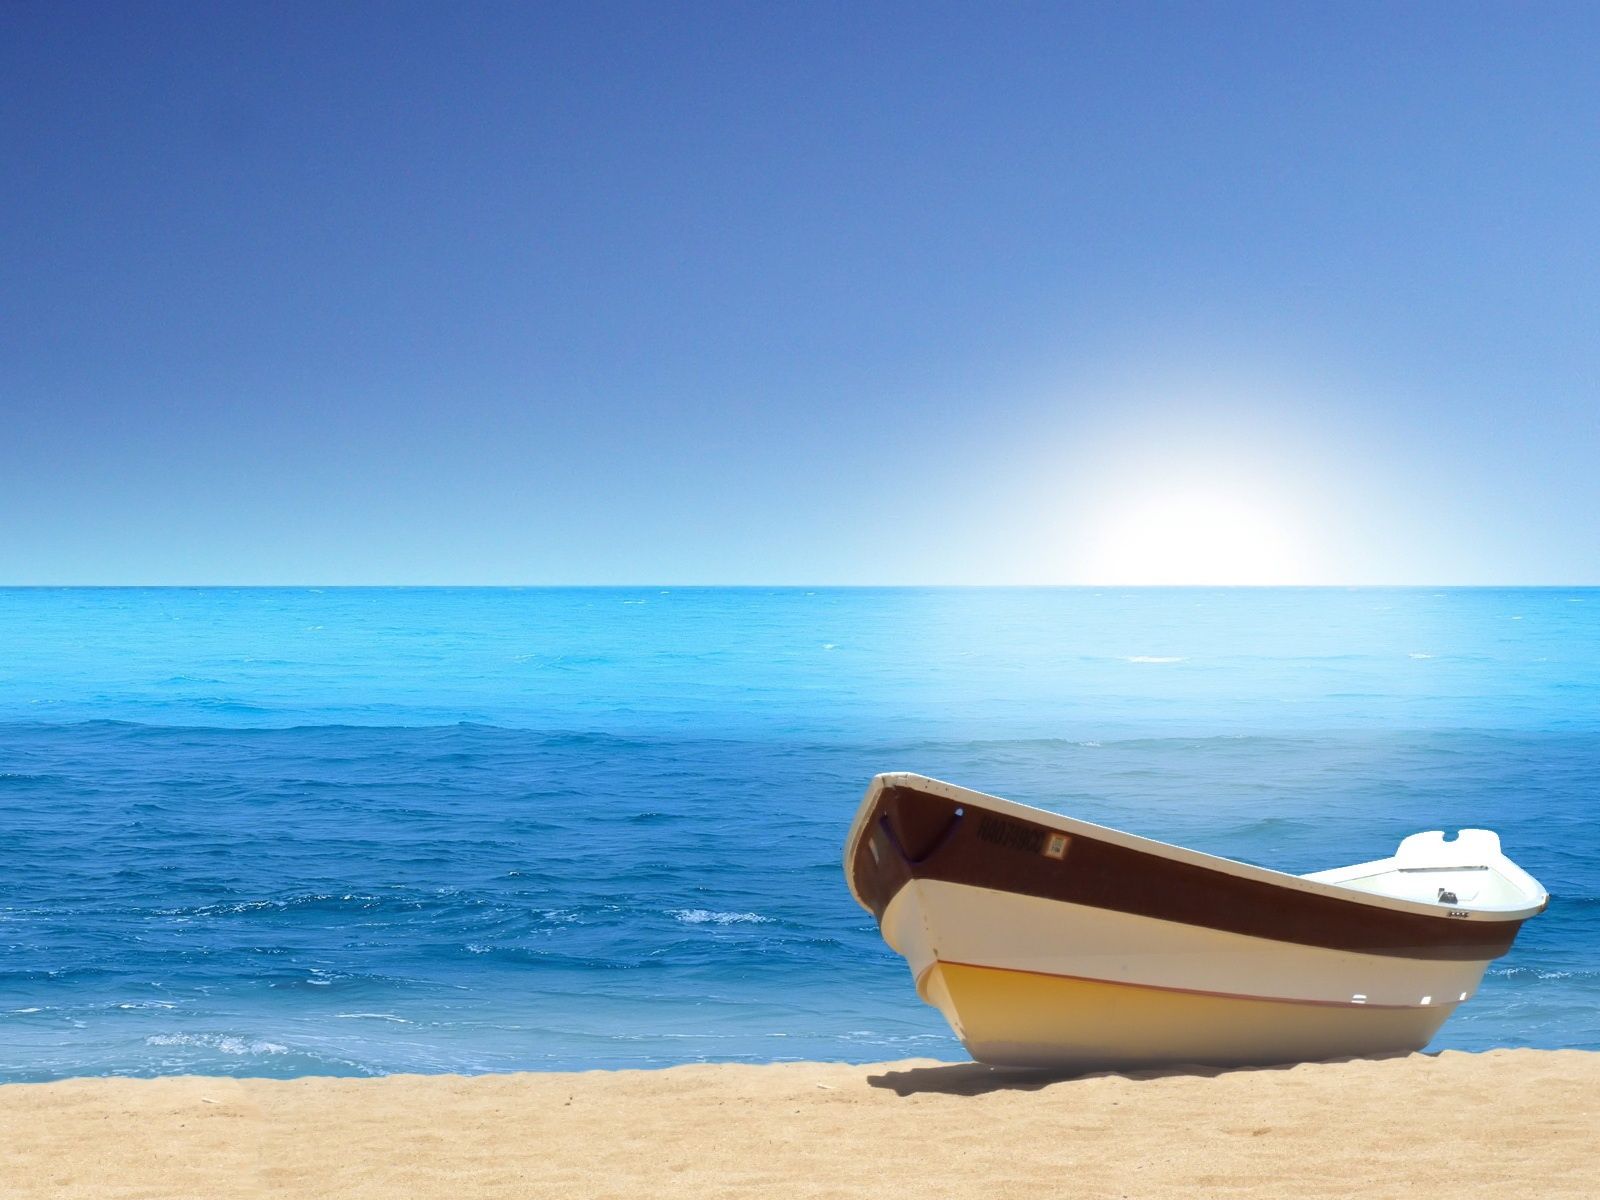 HD wallpaper, Sea, Boat, Beach, Picture